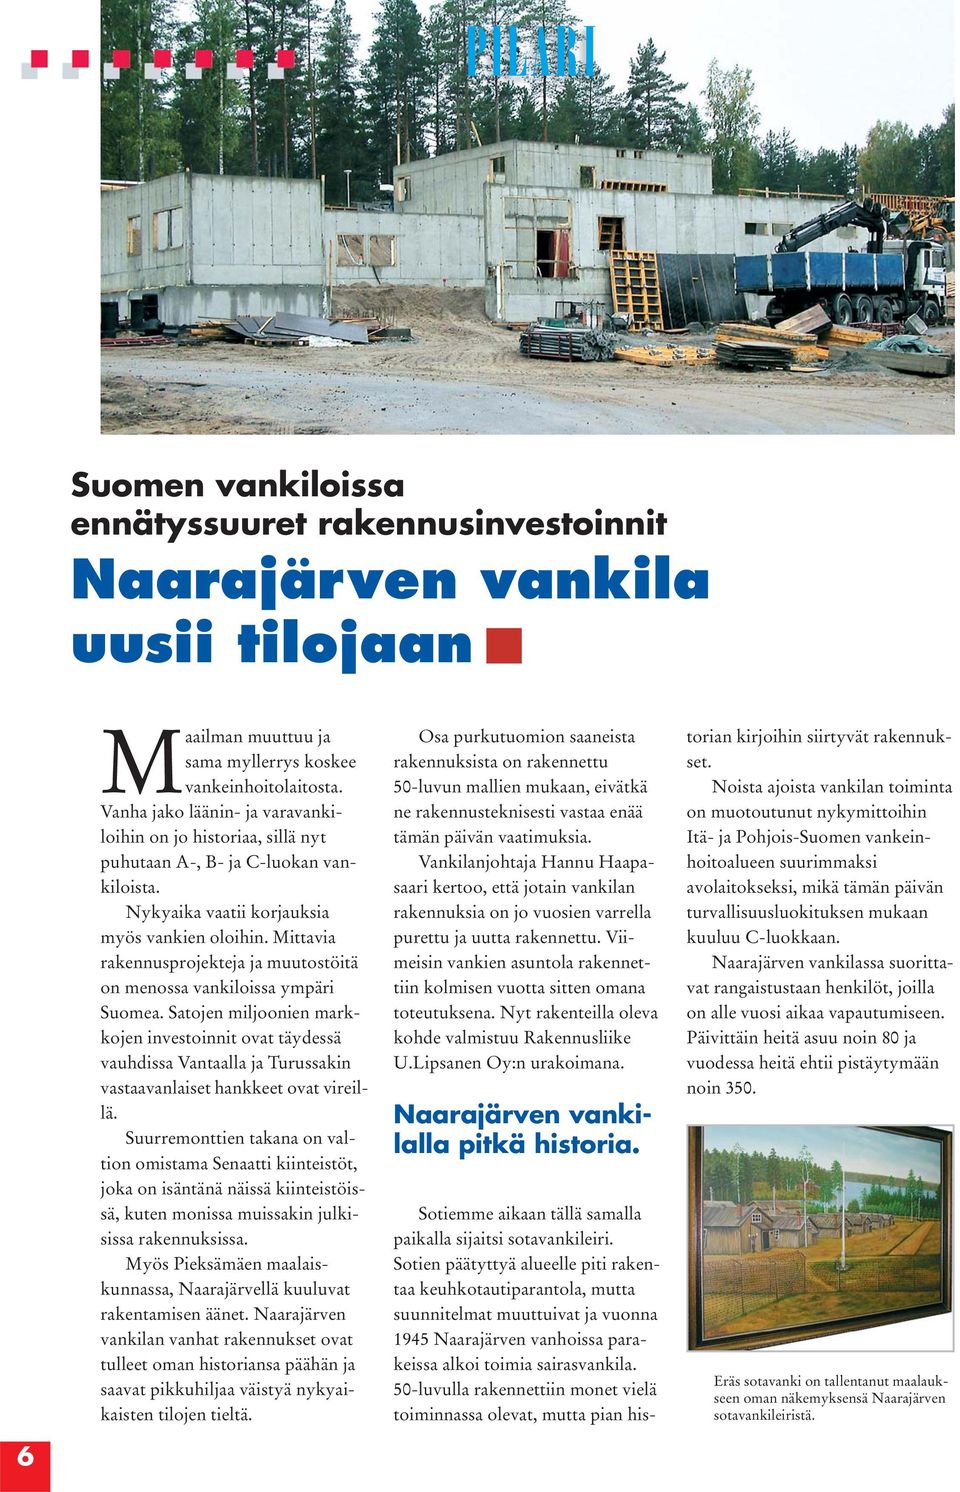 Mittavia rakennusprojekteja ja muutostöitä on menossa vankiloissa ympäri Suomea.